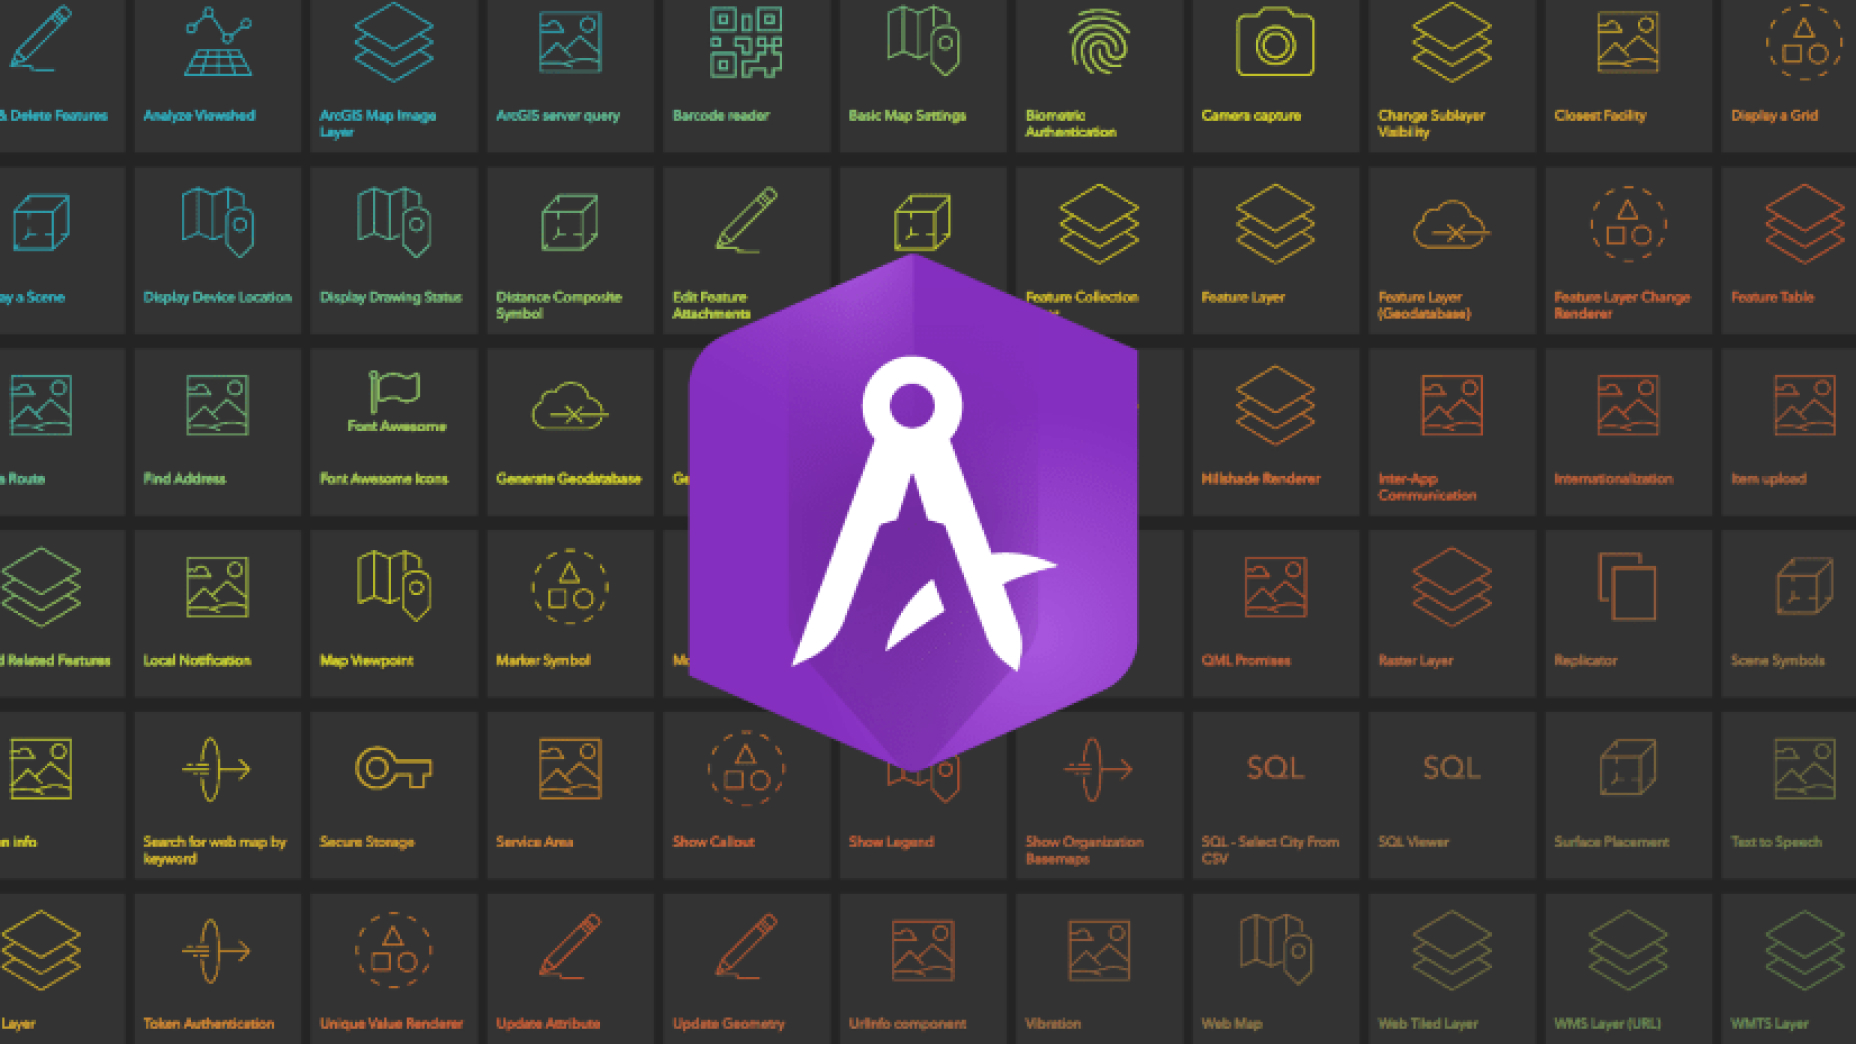 Cuadrícula cuadrada de color gris oscuro con iconos superpuestos con una forma púrpura y un icono blanco en su interior que representa el logotipo de AppStudio